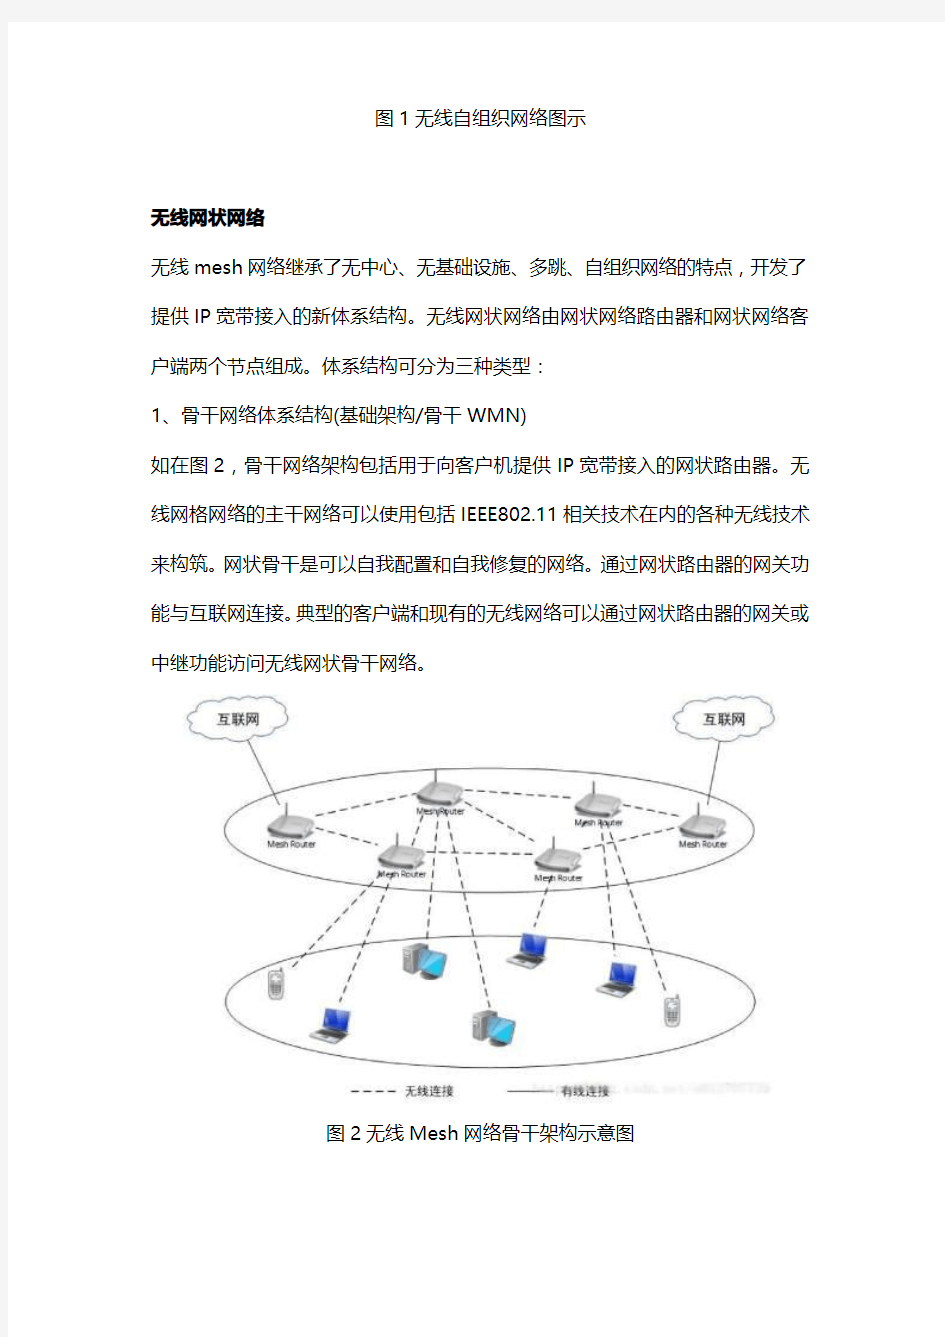 无线mesh网络的体系结构